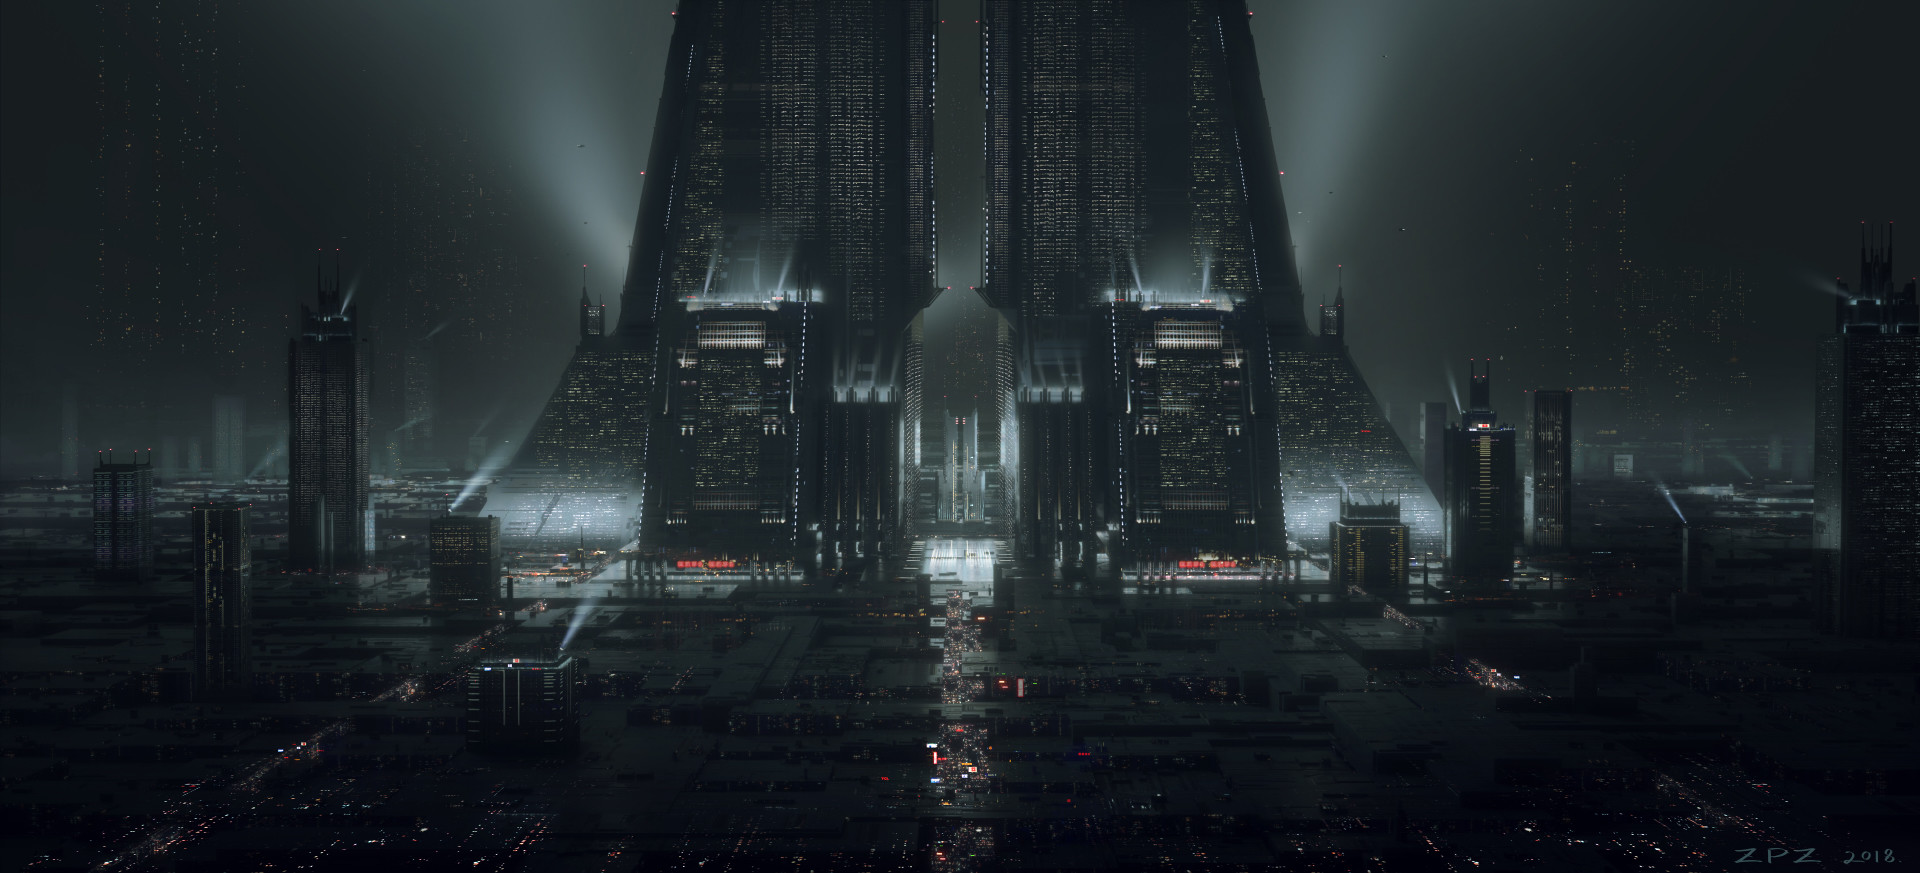 Digital Art Landscape Pengzhen Zhang Cyberpunk Fantasy City Fantasy Architecture Blade Runner 1920x873